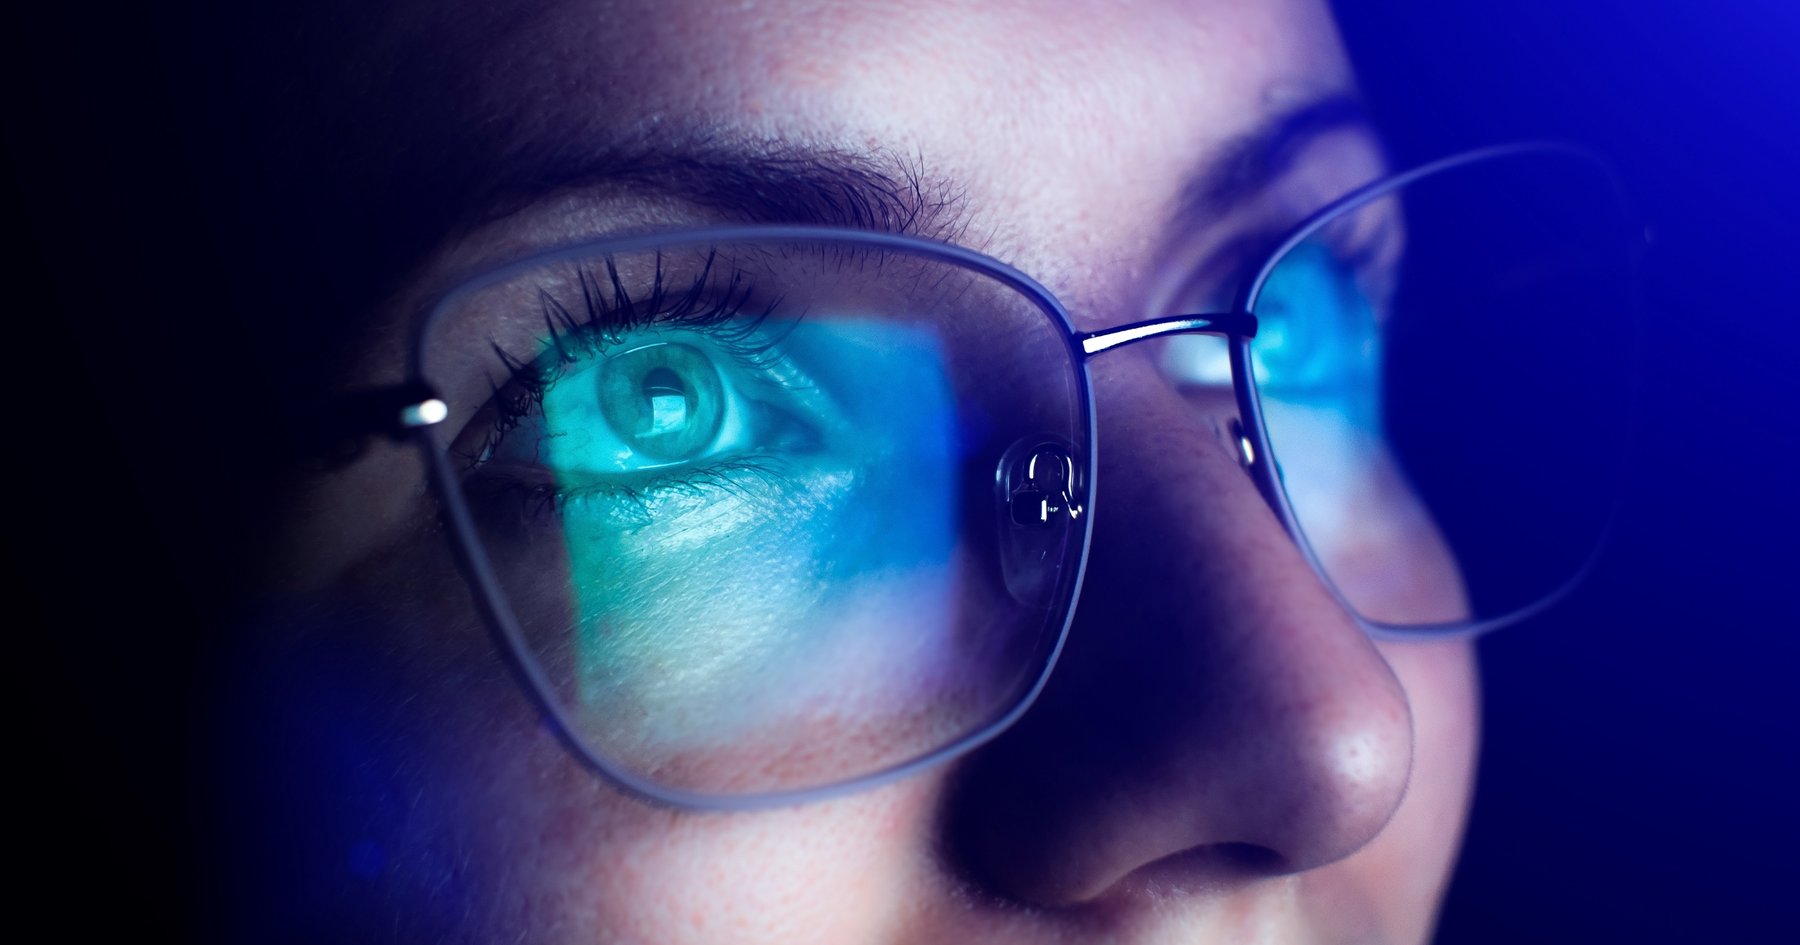 Funcionan los lentes para filtrar la luz azul? - The New York Times